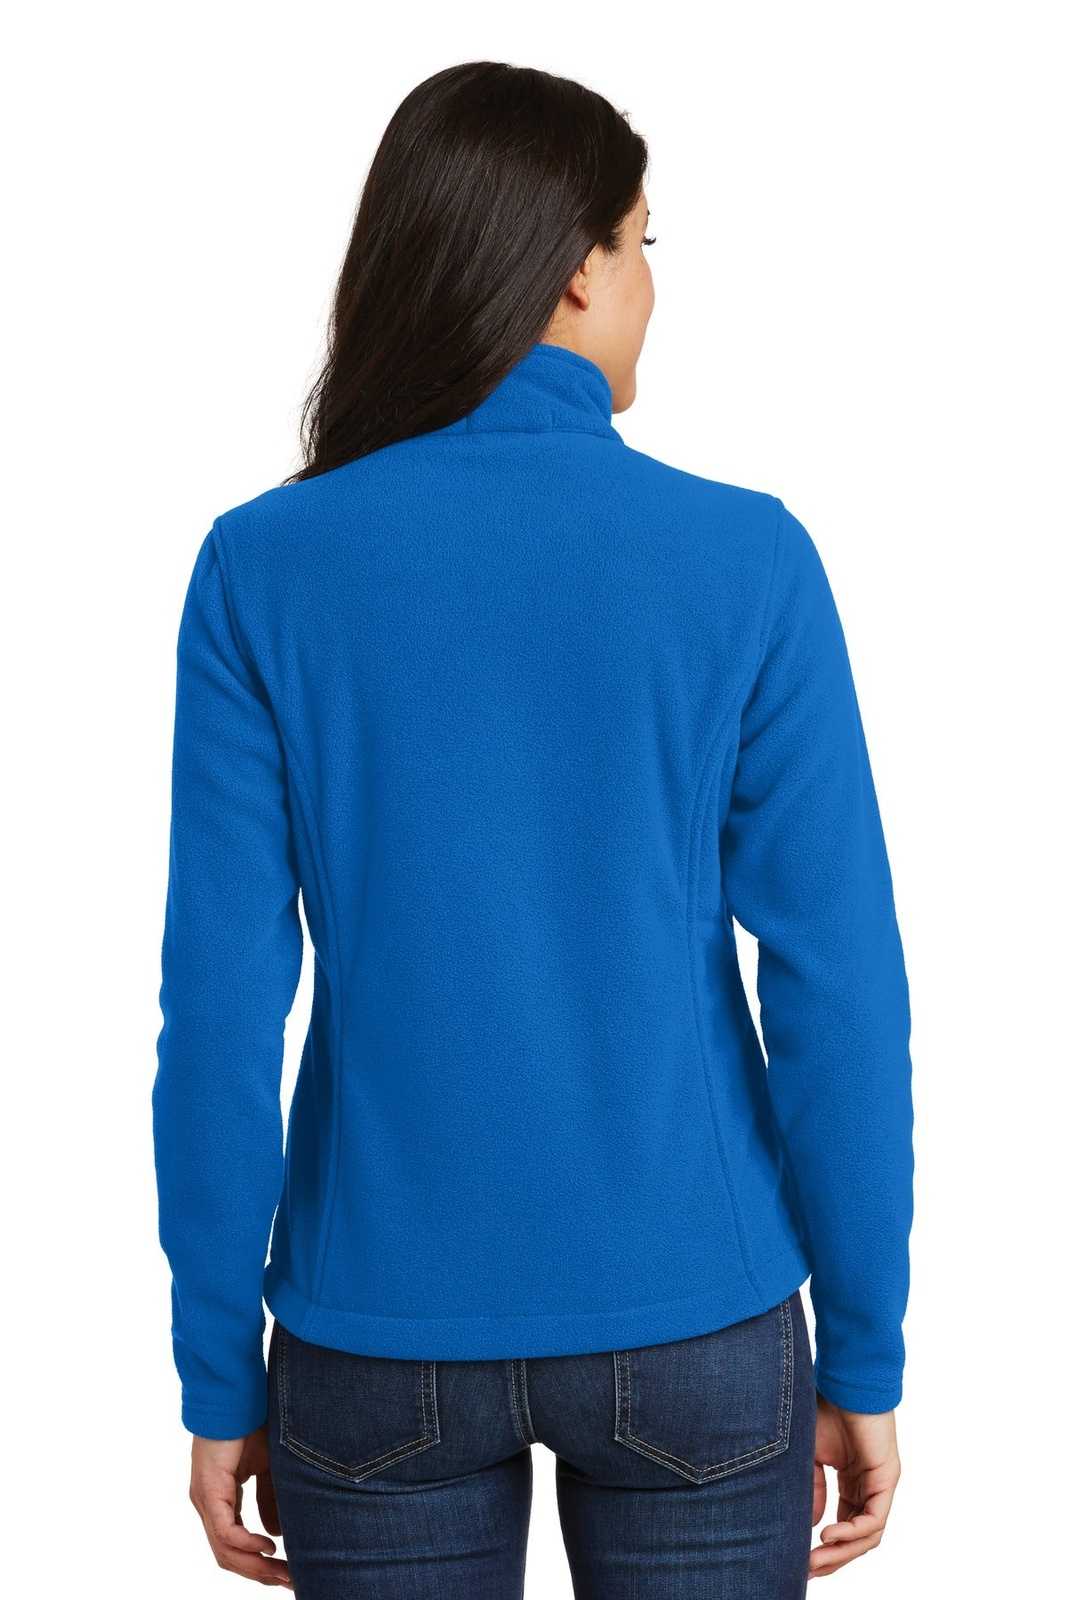 Port Authority L217 Ladies Value Fleece Jacket - Skydiver Blue - HIT a Double - 2